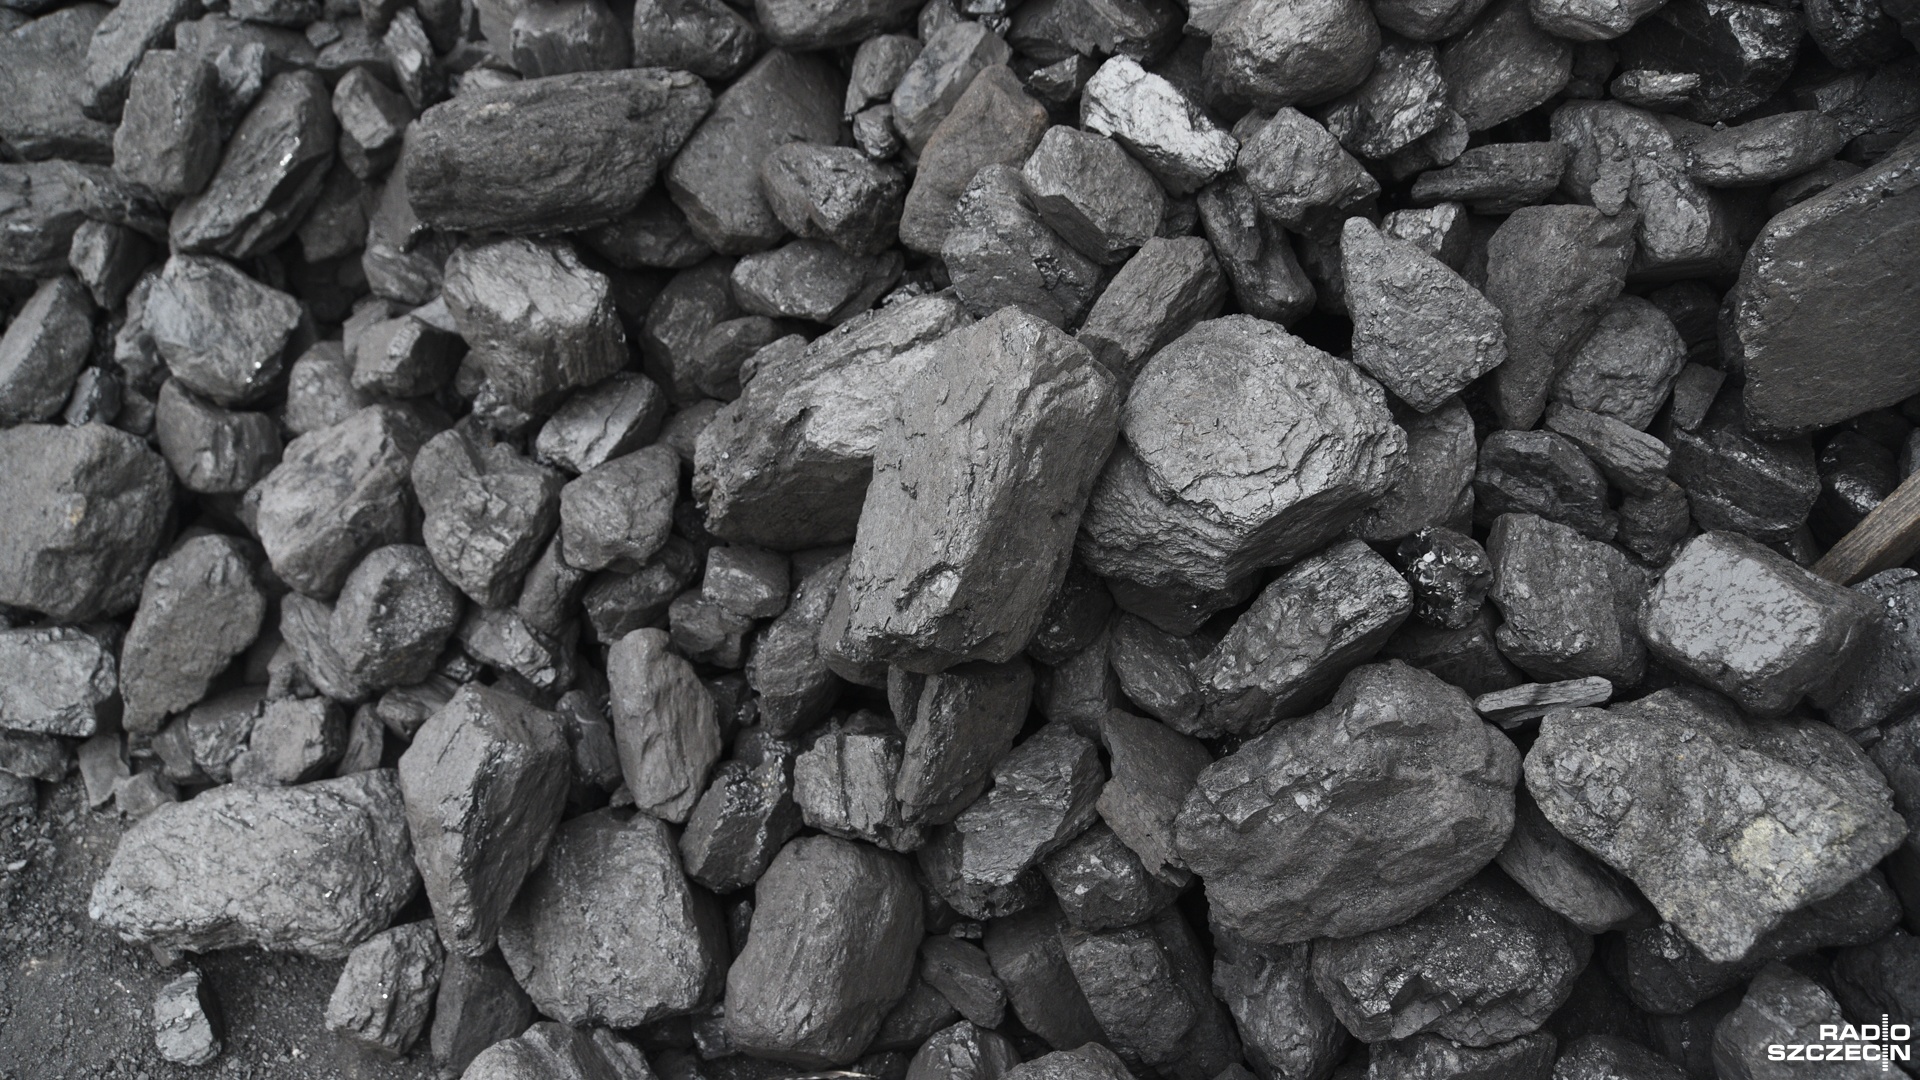 Od poniedziałku rusza nabór wniosków na zakup węgla w preferencyjnych cenach w Golczewie. To kolejna gmina w naszym regionie, która przyłącza się do rządowego programu dystrybucji surowca.